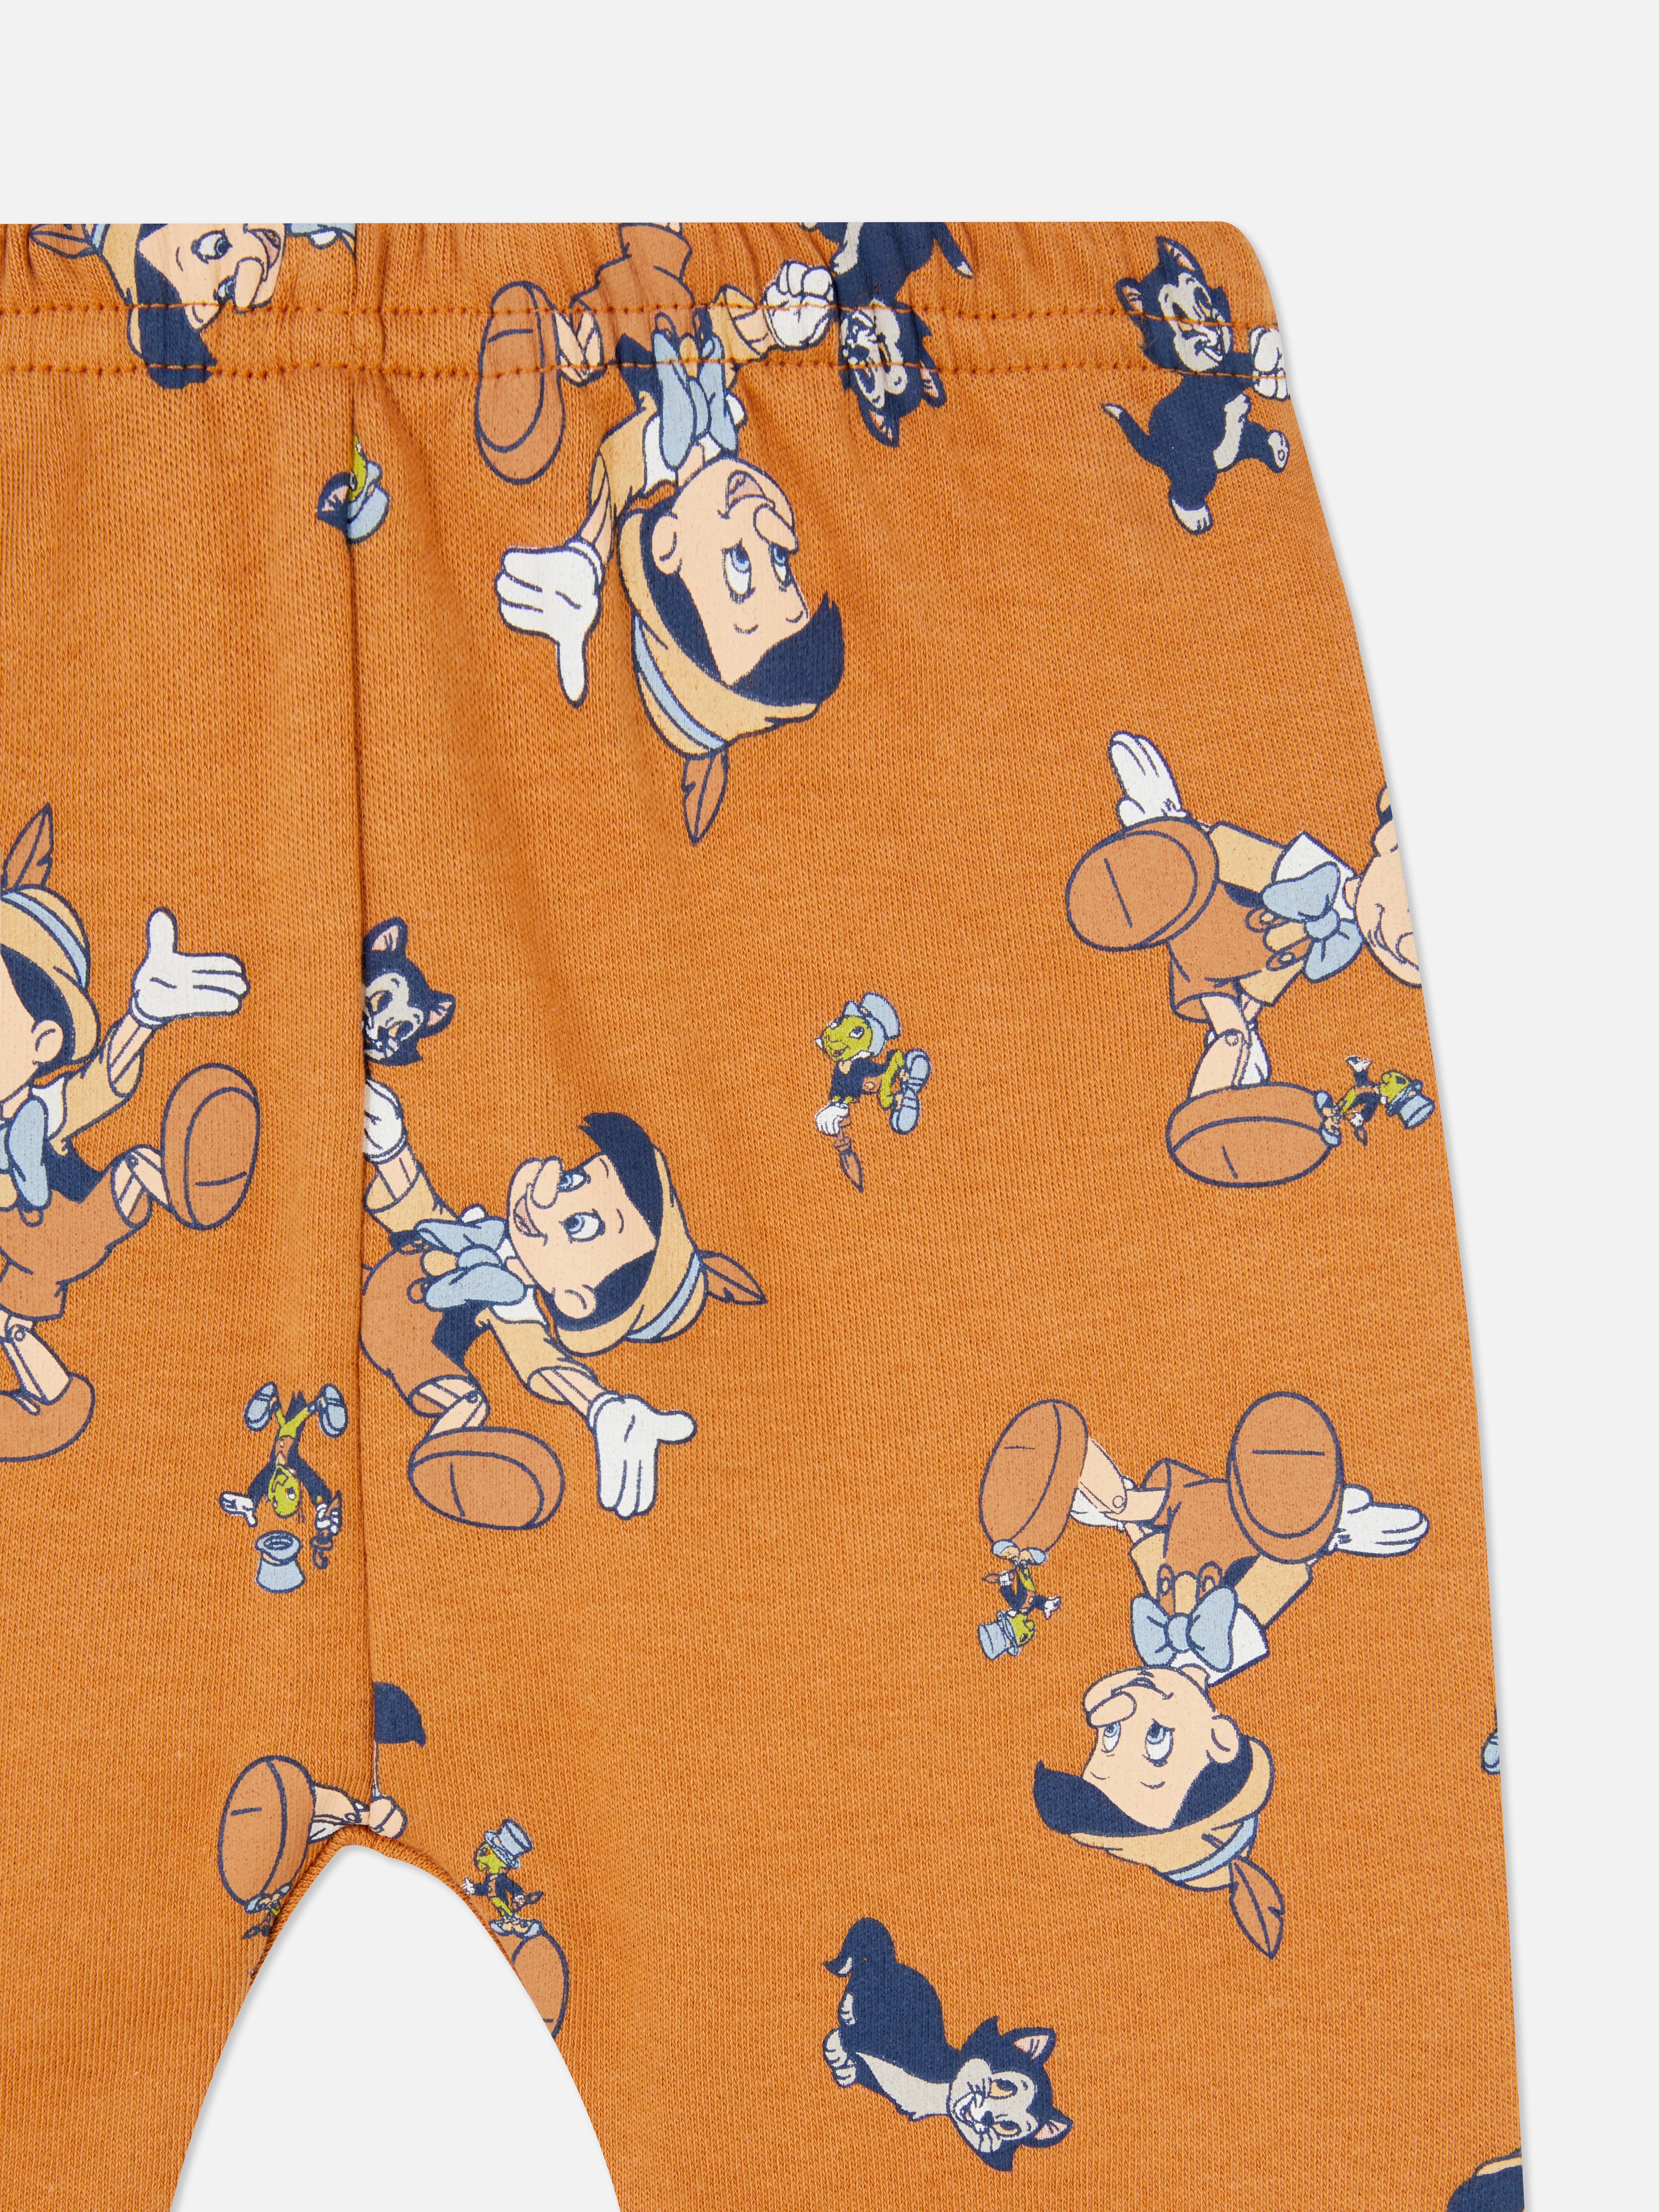 Disney's Pinocchio Leggings Bodysuit and Bib Set